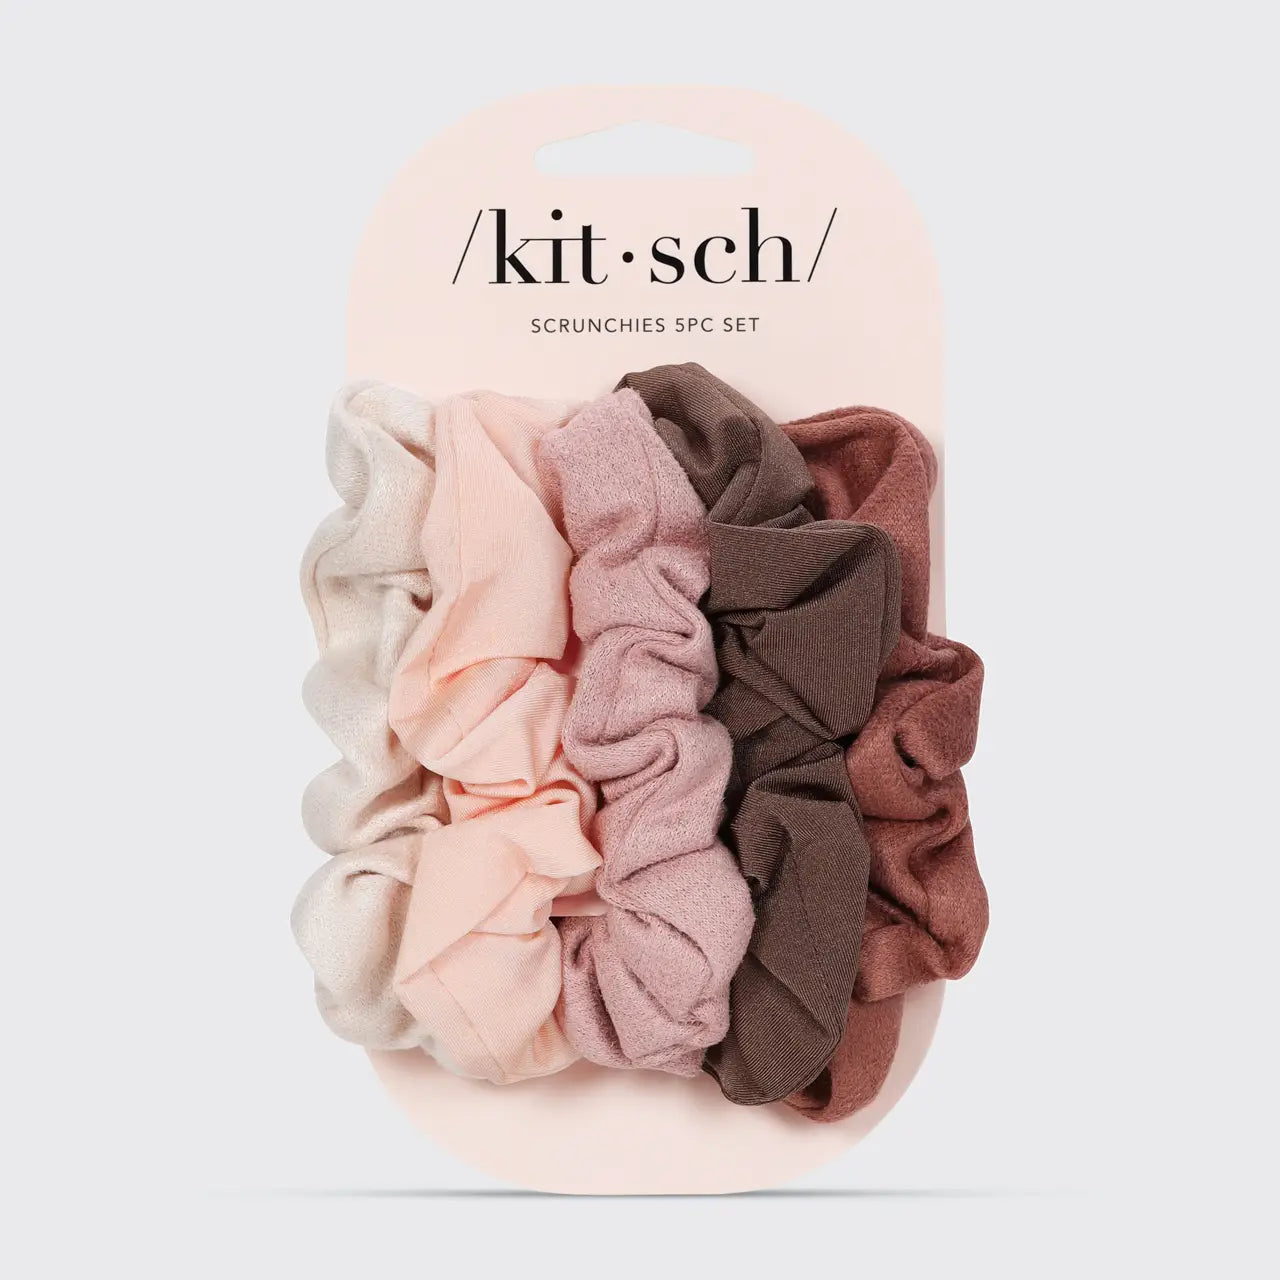 KITSCH Textured Scrunchies - 5 pc